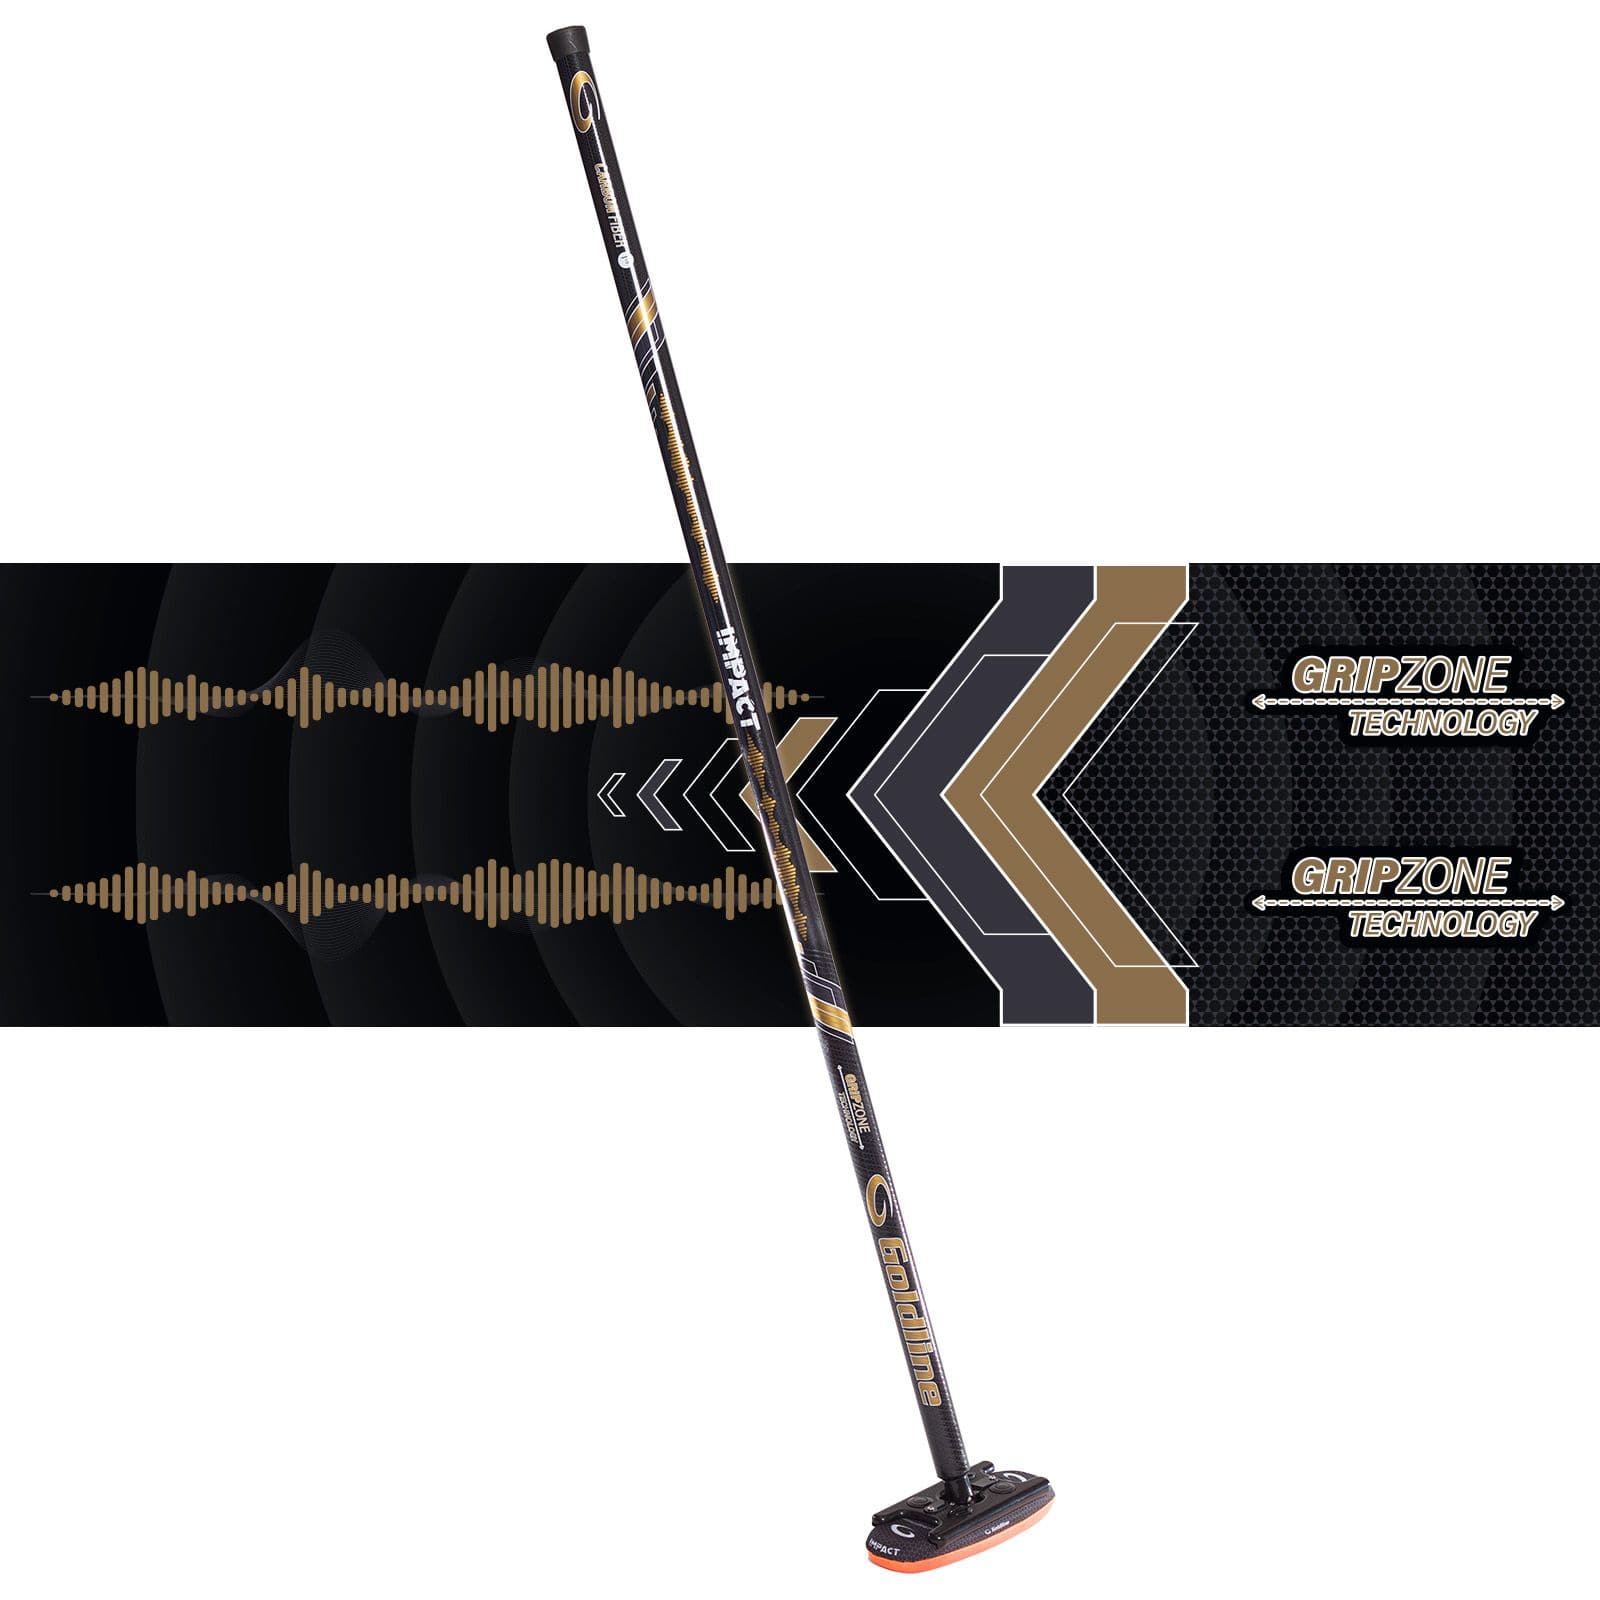 Goldline Carbon Fiber Curling Impact Broom, All Age Groups, Black 